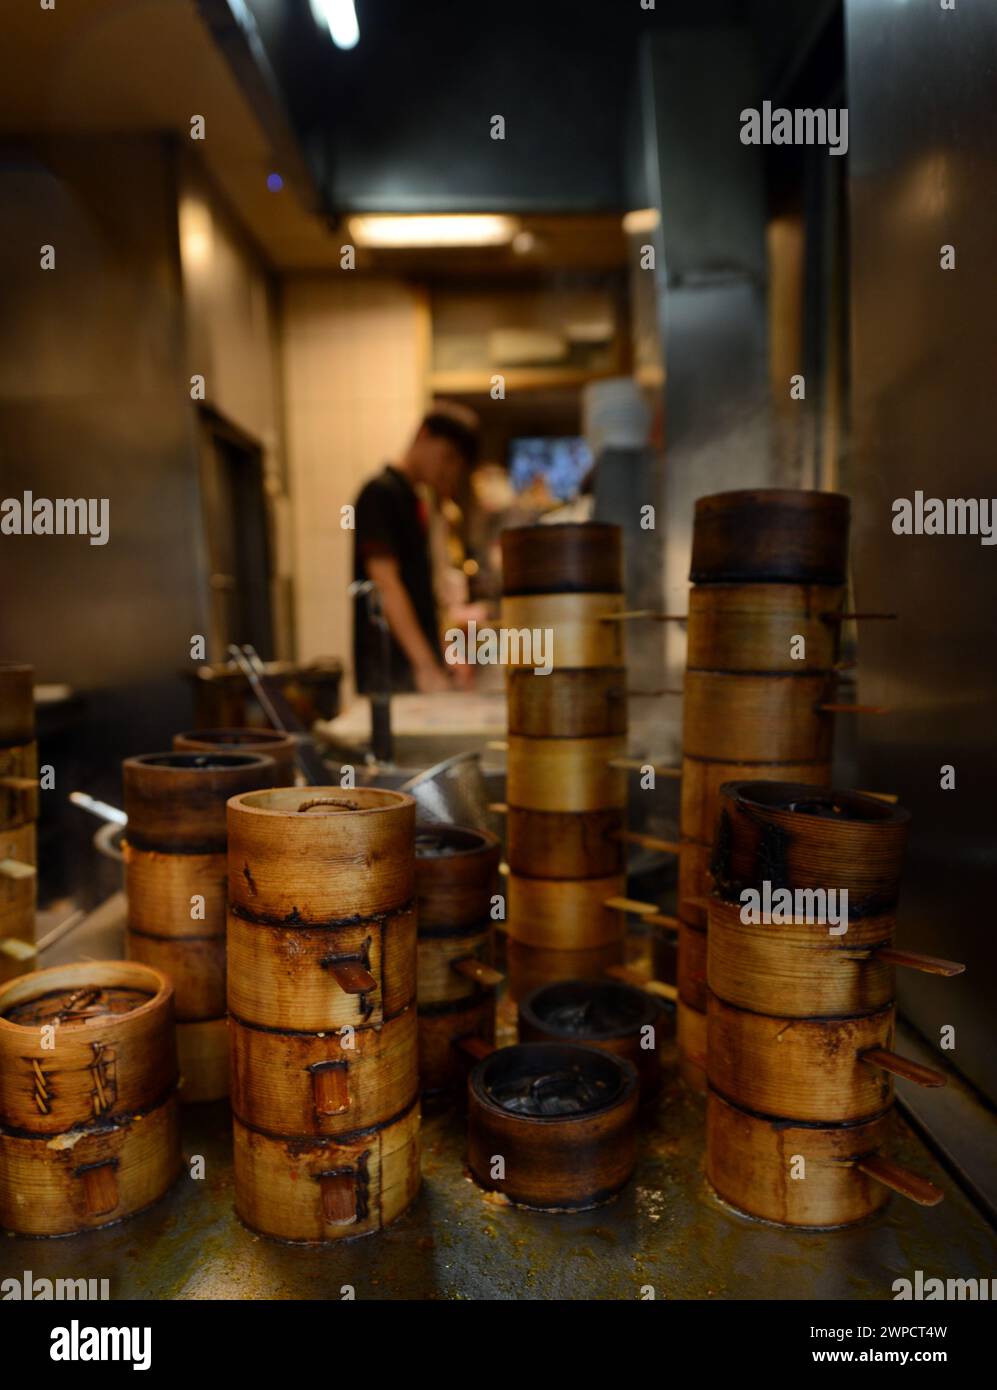 Boulettes cuites à la vapeur dans des casseroles traditionnelles en bambou au restaurant Yongkang Beef Noodles sur Jinshan S Rd, Taipei, Taiwan. Banque D'Images